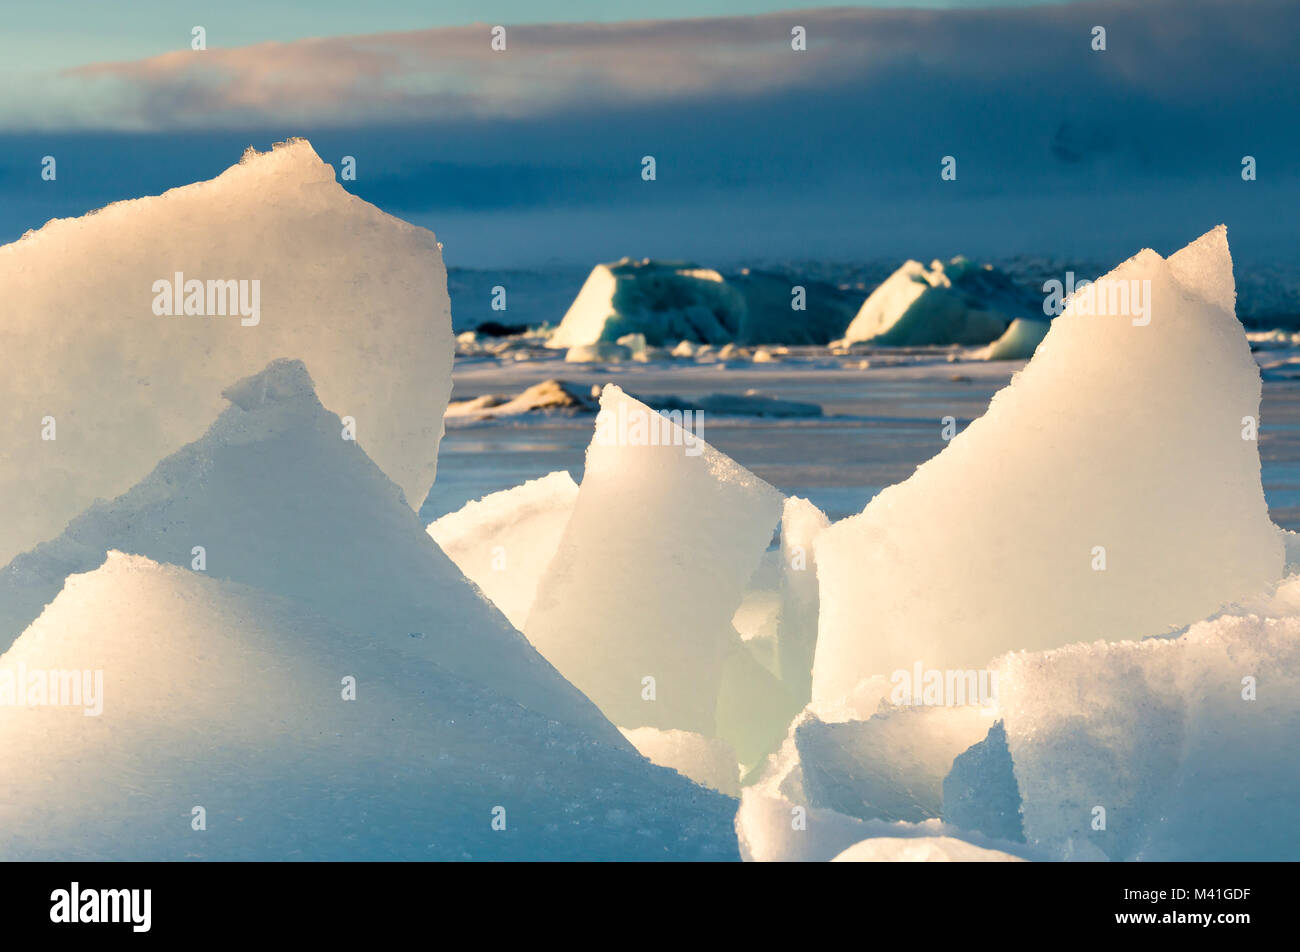 Les morceaux de glace dans le Jakulsarlon lagoon,sud,Europe Islande Banque D'Images